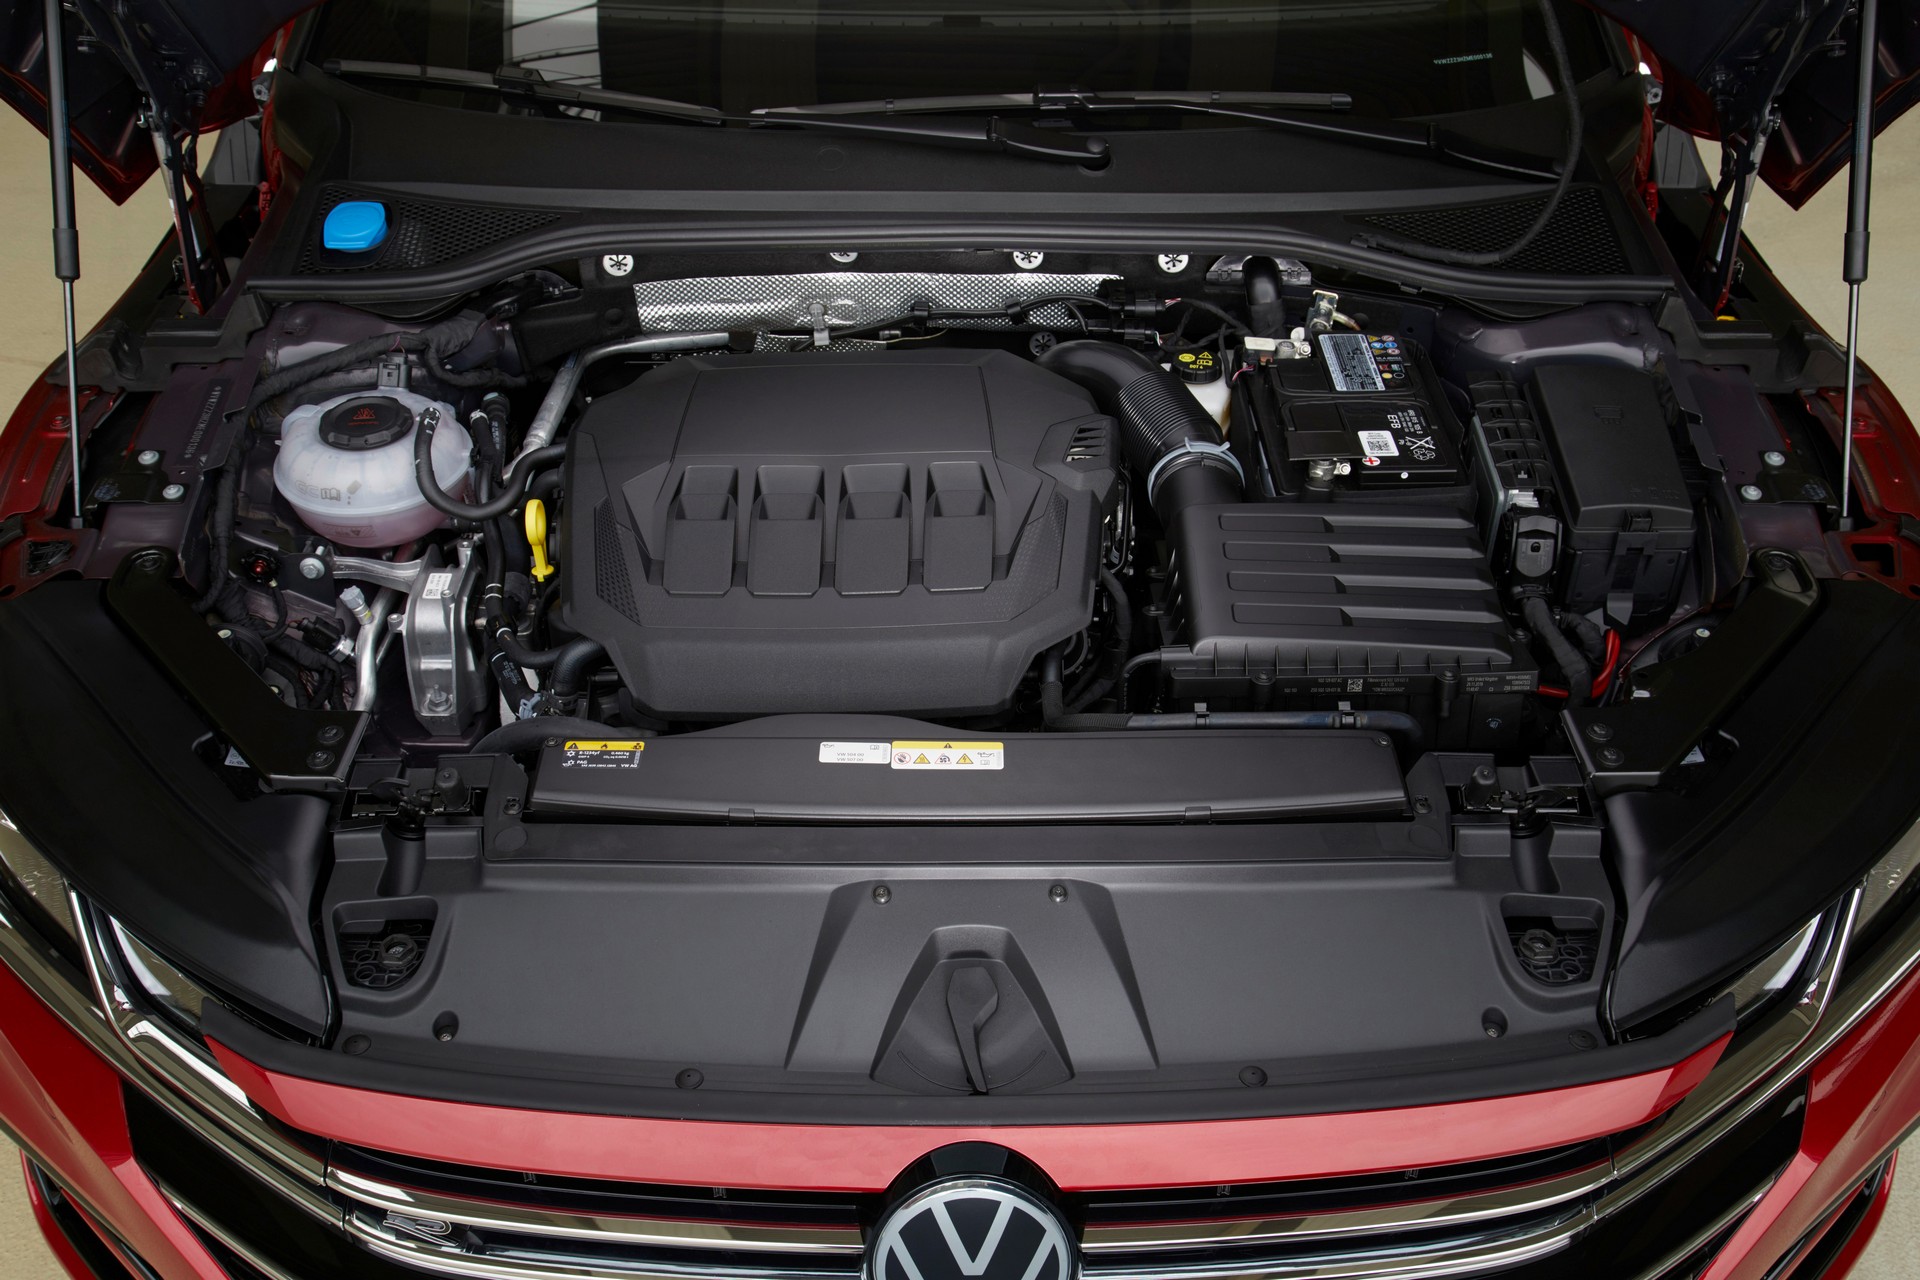 2020 Volkswagen Arteon tanıtıldı: Shooting Brake gövde tipi, güçlü R versiyon ve plug-in hibrit motor